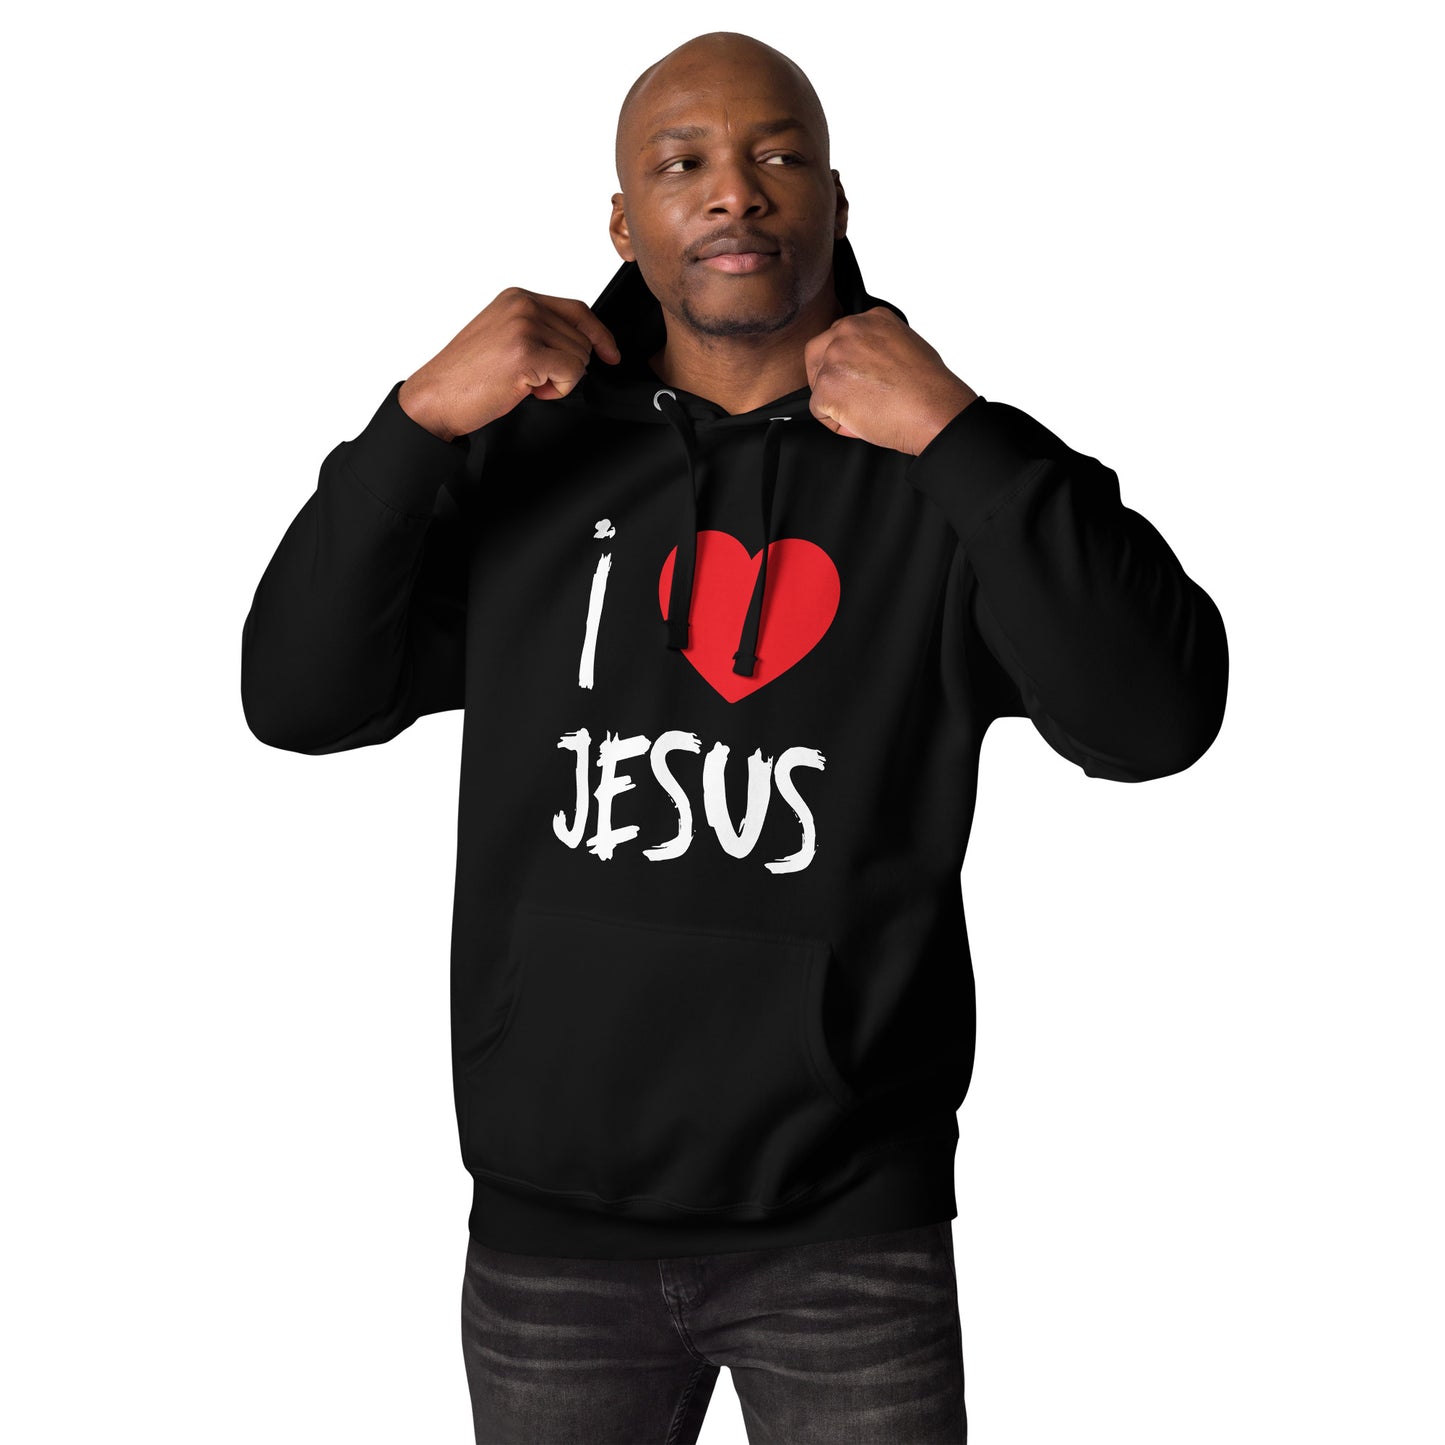 I Love Jesus - Unisex Hoodie